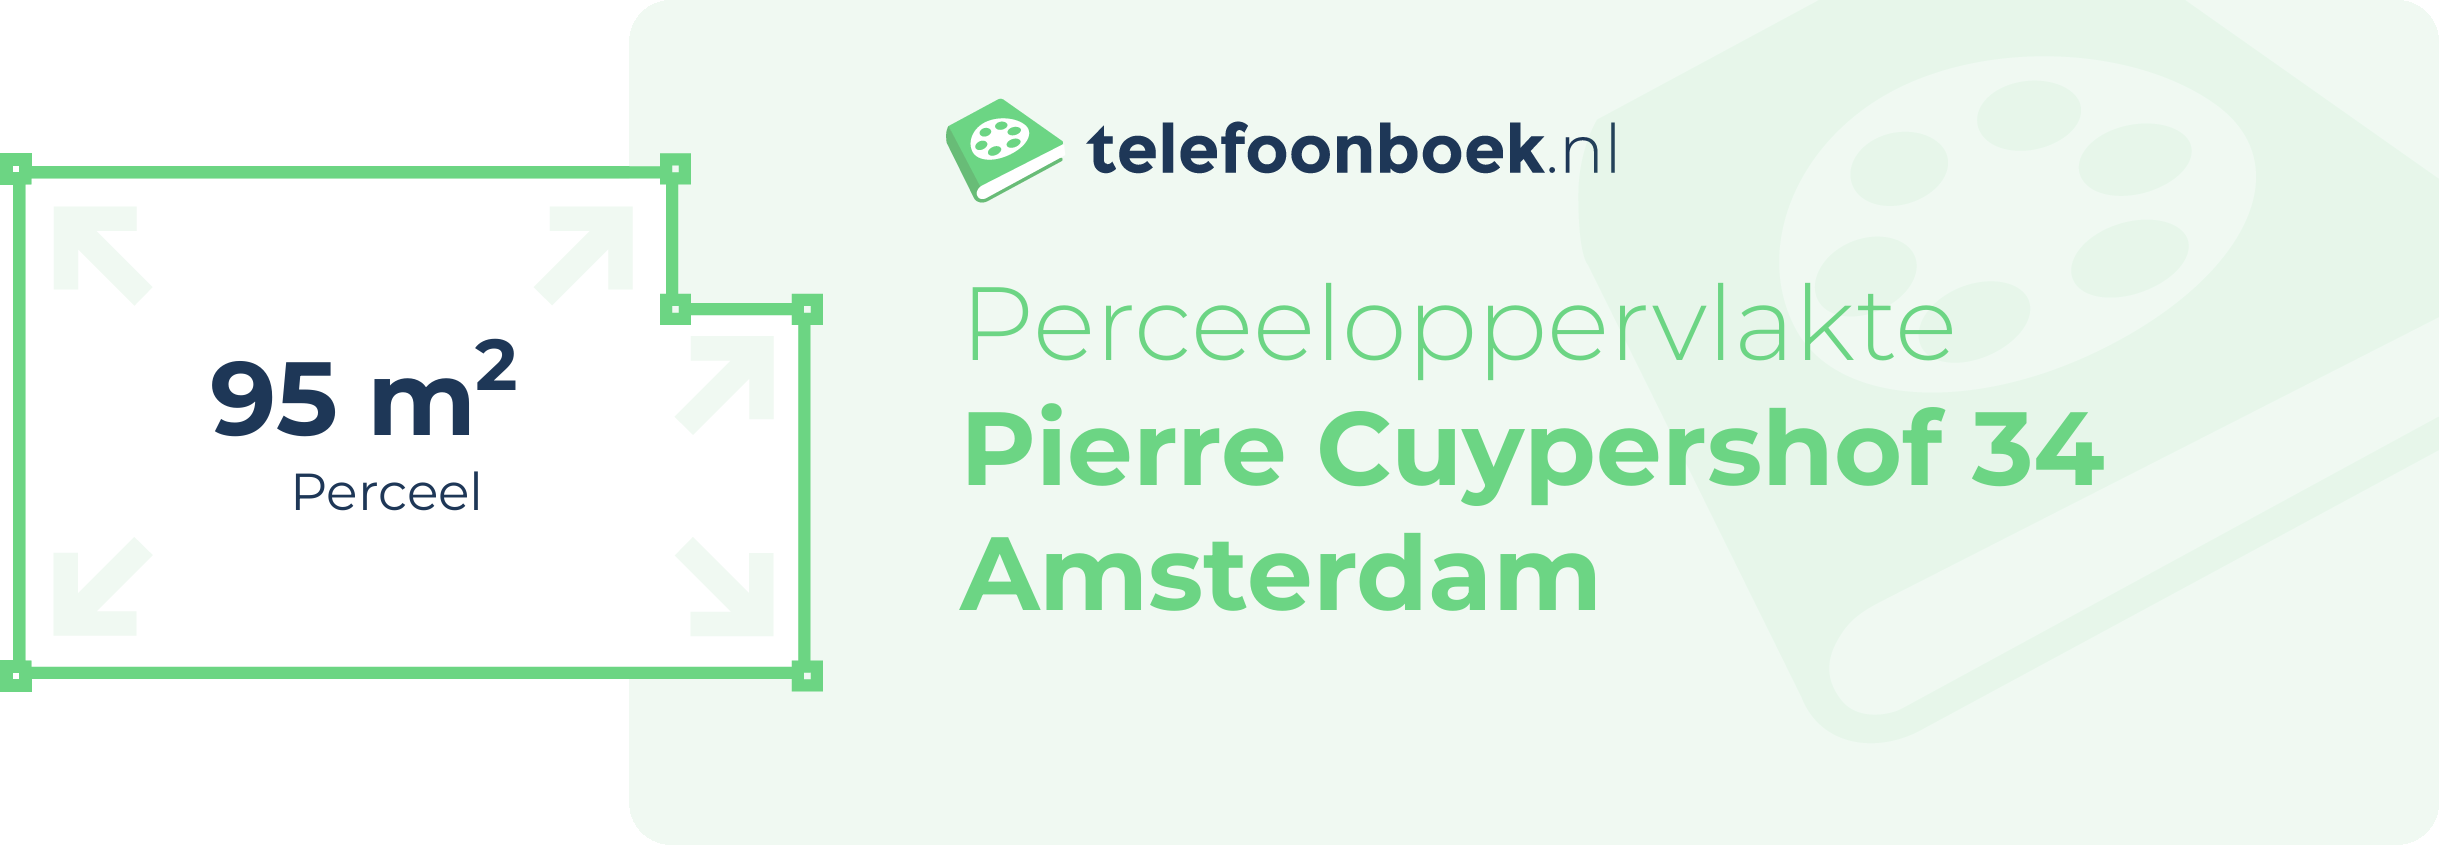 Perceeloppervlakte Pierre Cuypershof 34 Amsterdam